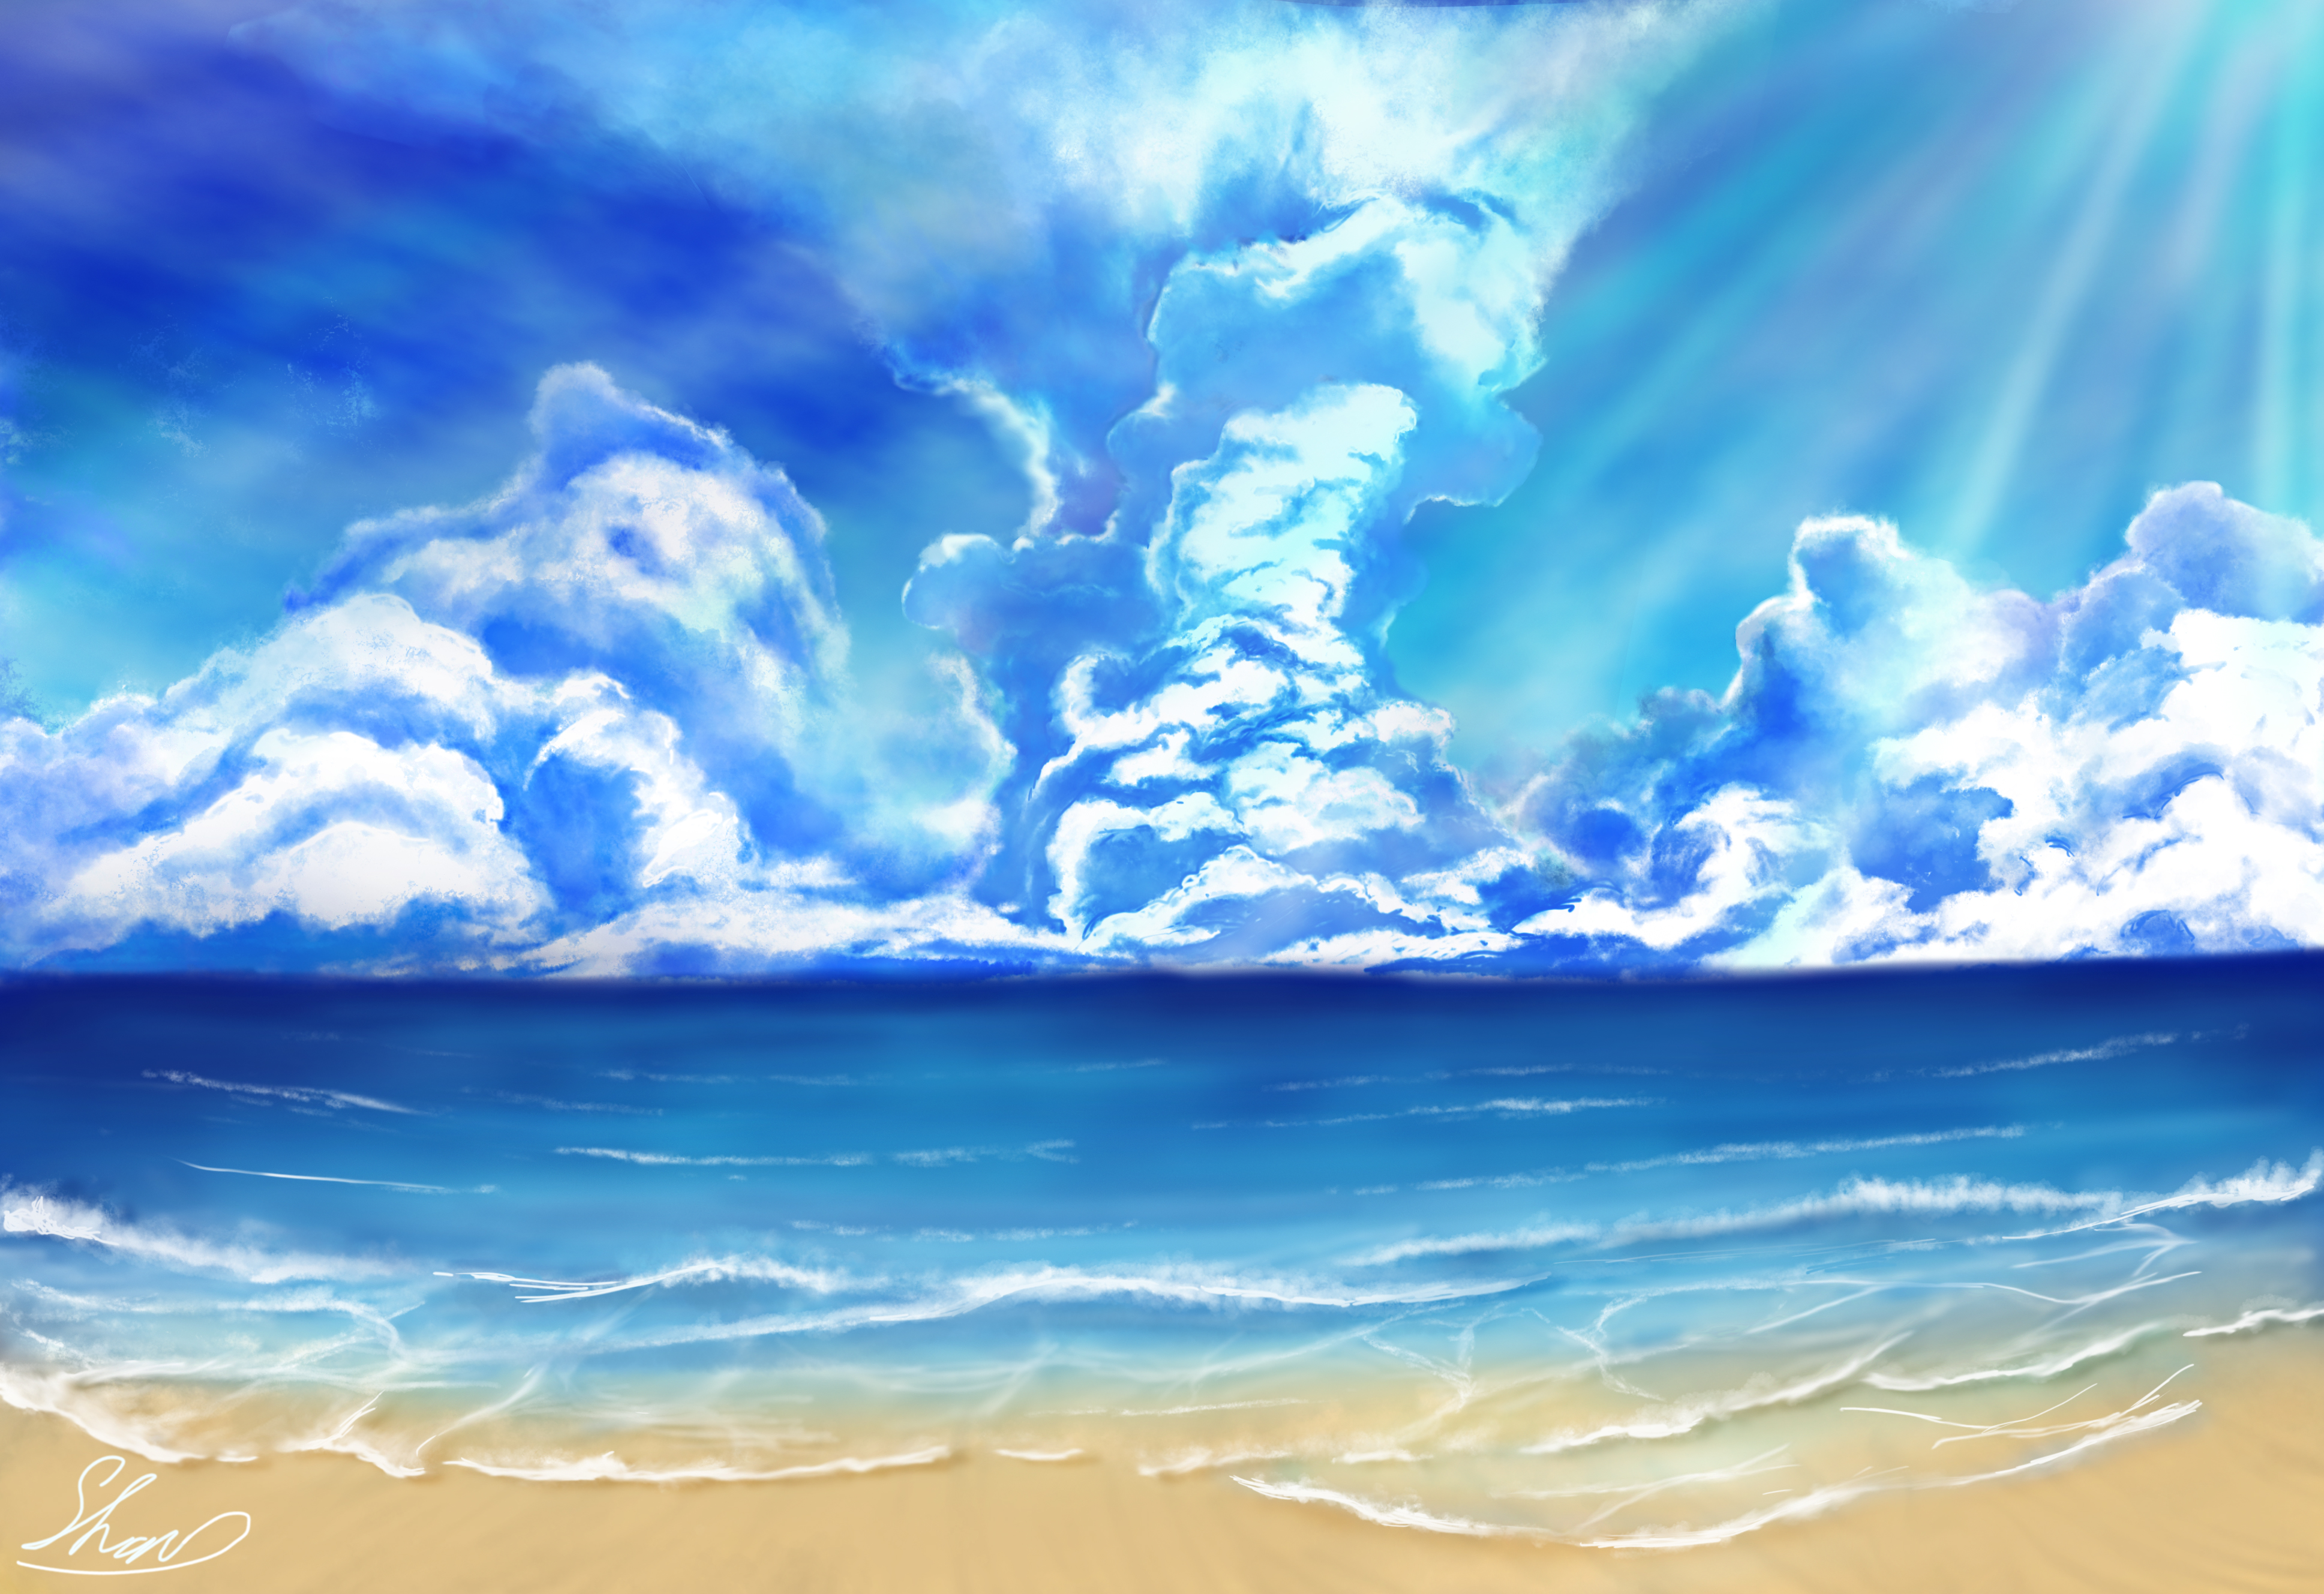 Download mobile wallpaper Beach, Ocean, Artistic, Cloud for free.